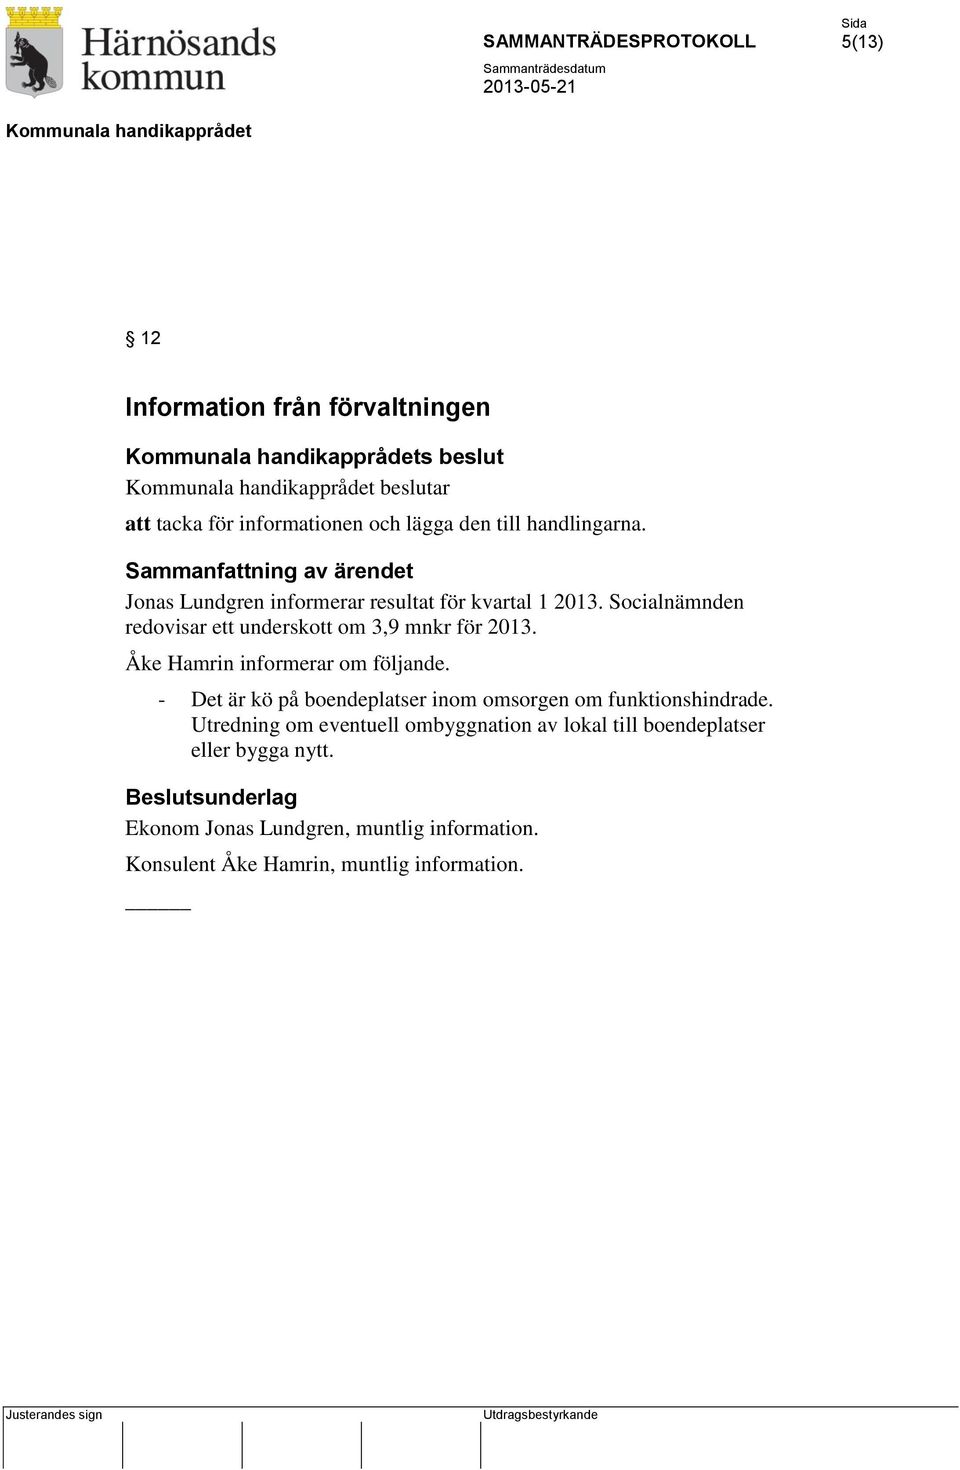 Socialnämnden redovisar ett underskott om 3,9 mnkr för 2013. Åke Hamrin informerar om följande.